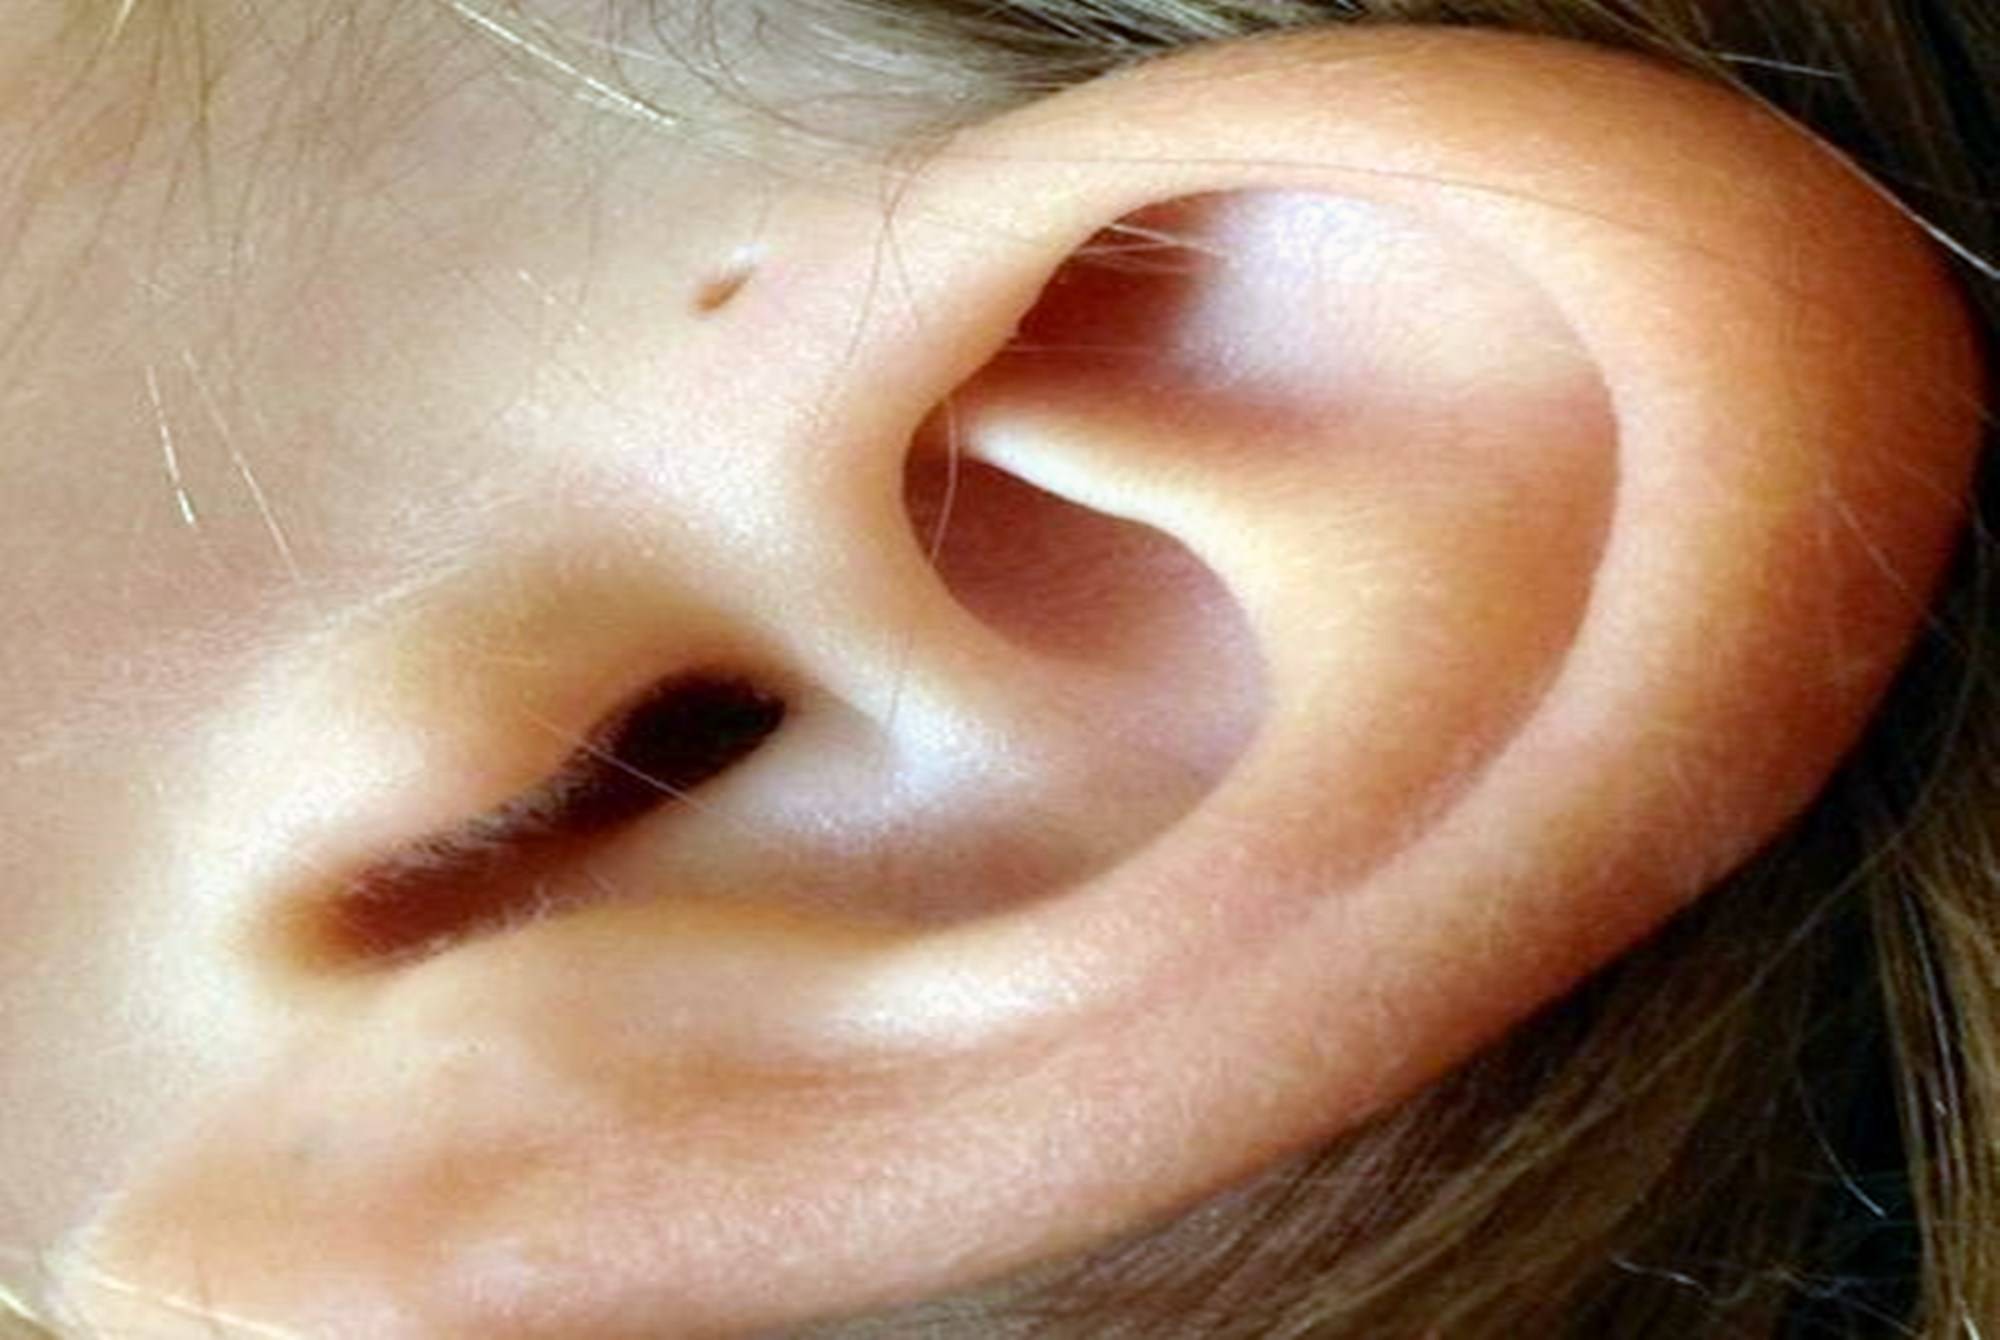 原创为啥有些新生儿耳朵上有小孔不是聪明孔可能暗示孩子危险